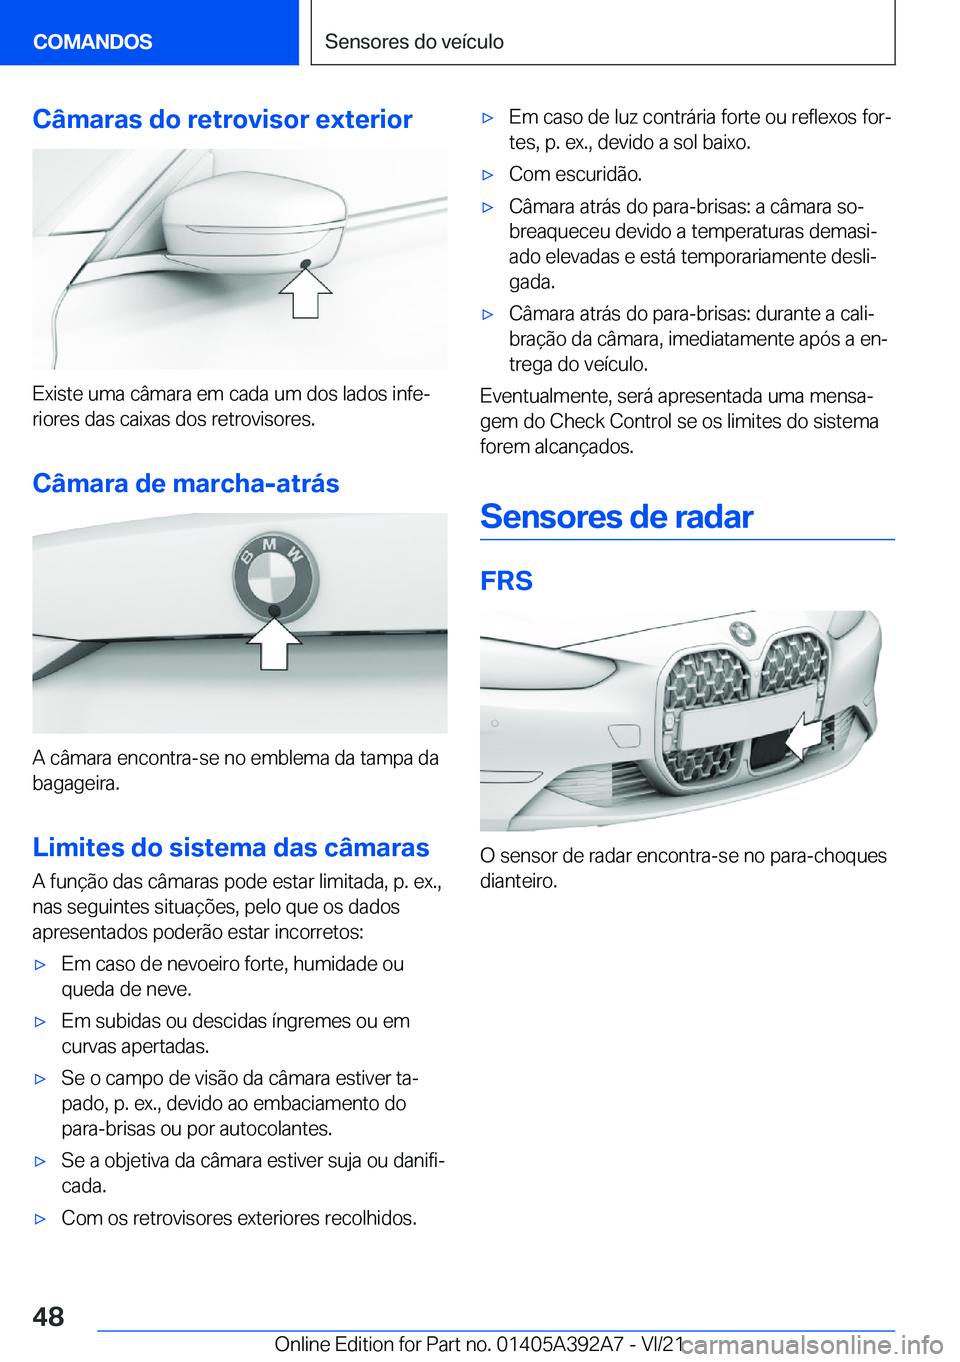 BMW 4 SERIES 2022  Manual do condutor (in Portuguese) �C�â�m�a�r�a�s��d�o��r�e�t�r�o�v�i�s�o�r��e�x�t�e�r�i�o�r
�E�x�i�s�t�e��u�m�a��c�â�m�a�r�a��e�m��c�a�d�a��u�m��d�o�s��l�a�d�o�s��i�n�f�eª�r�i�o�r�e�s��d�a�s��c�a�i�x�a�s��d�o�s��r�e